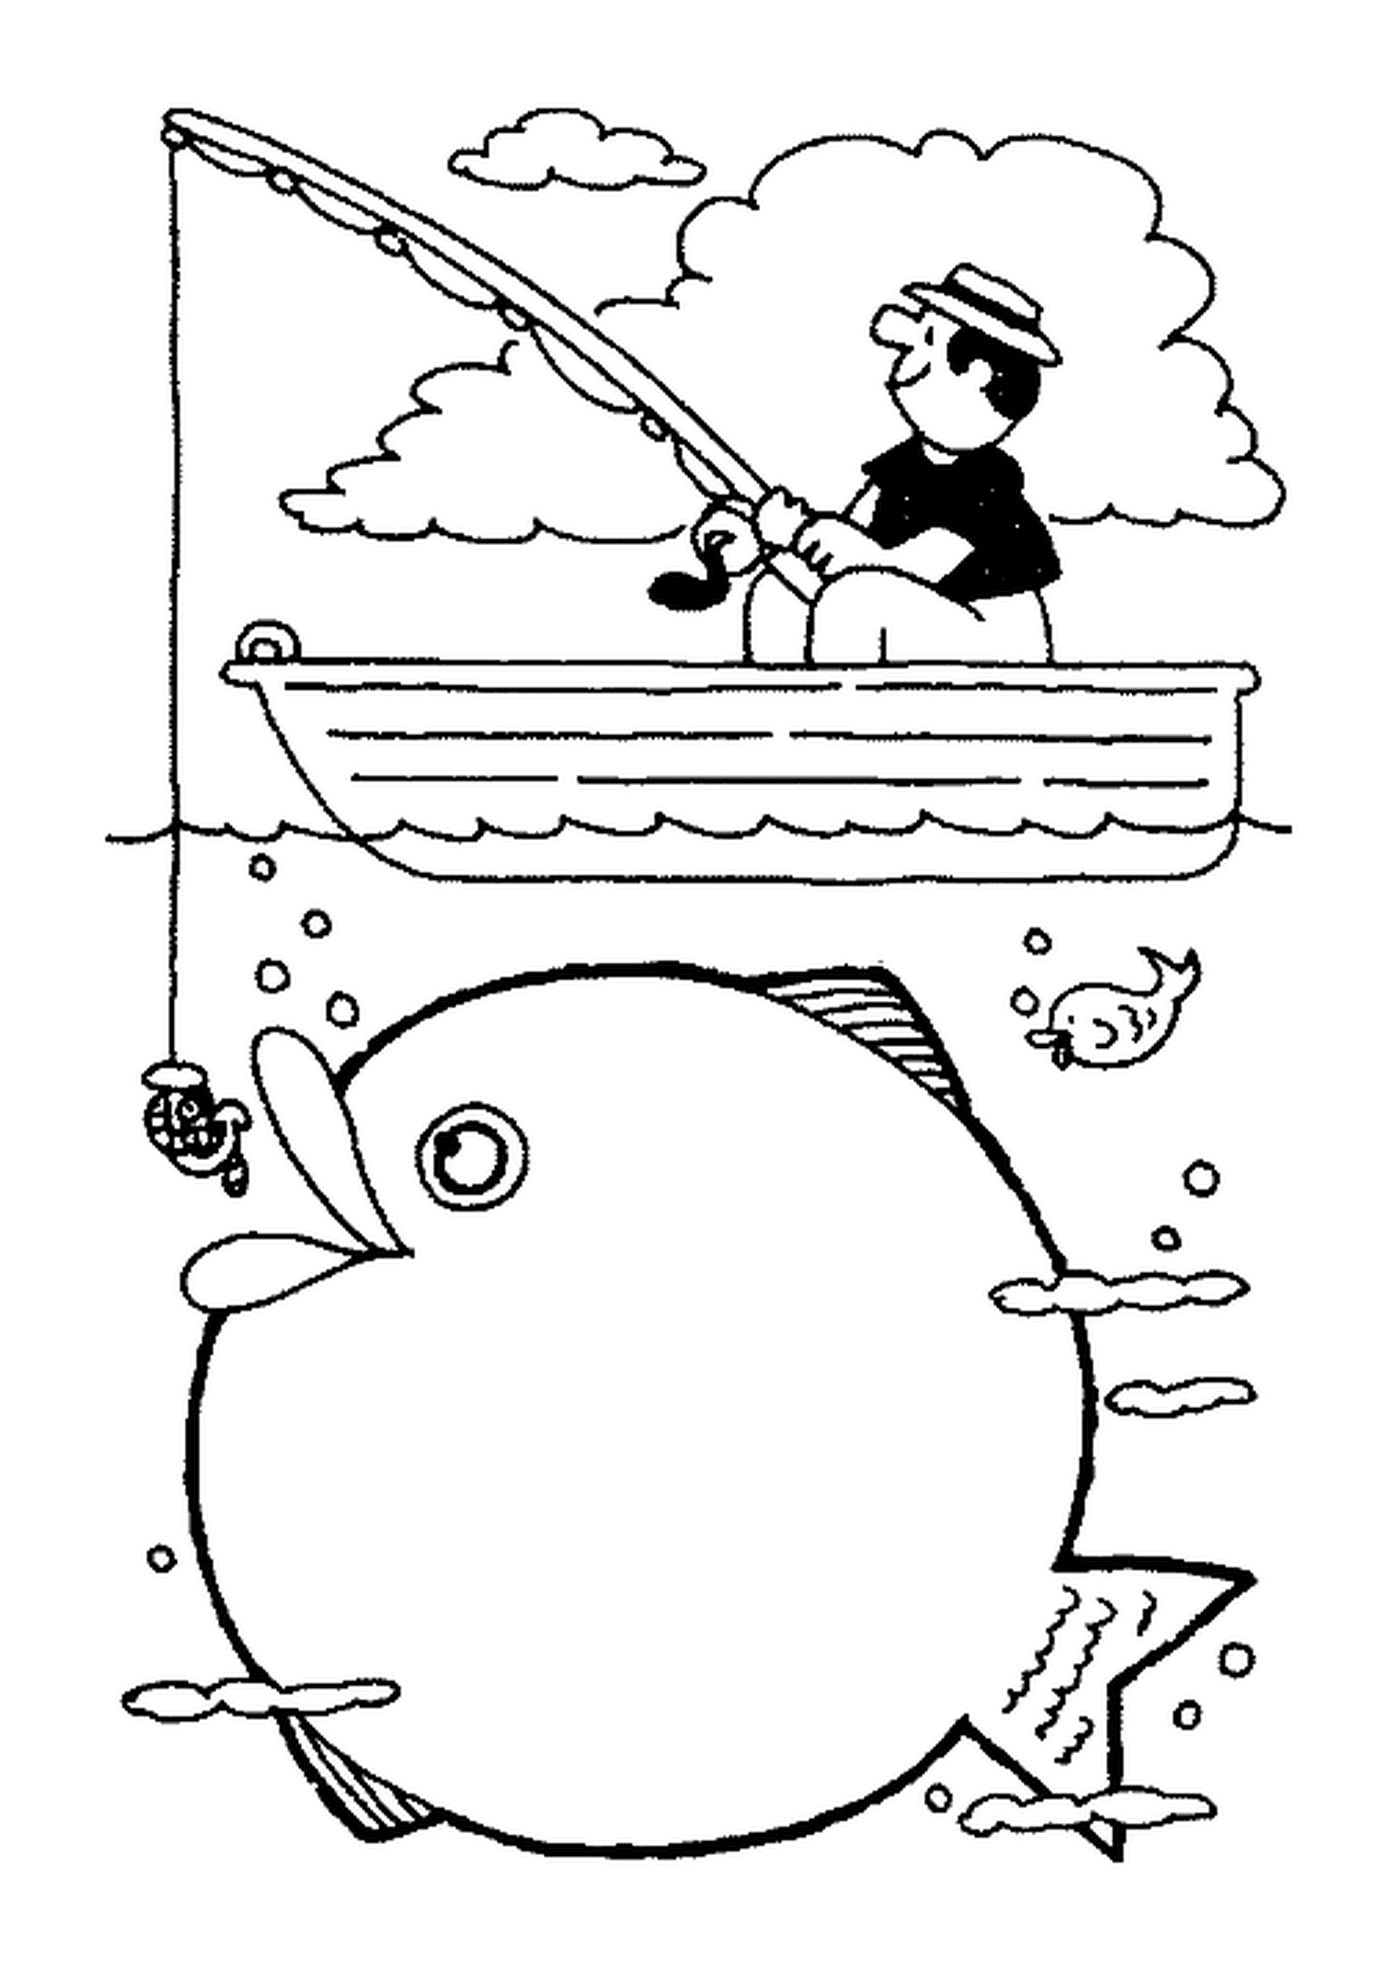  L'uomo che pesca in una barca 